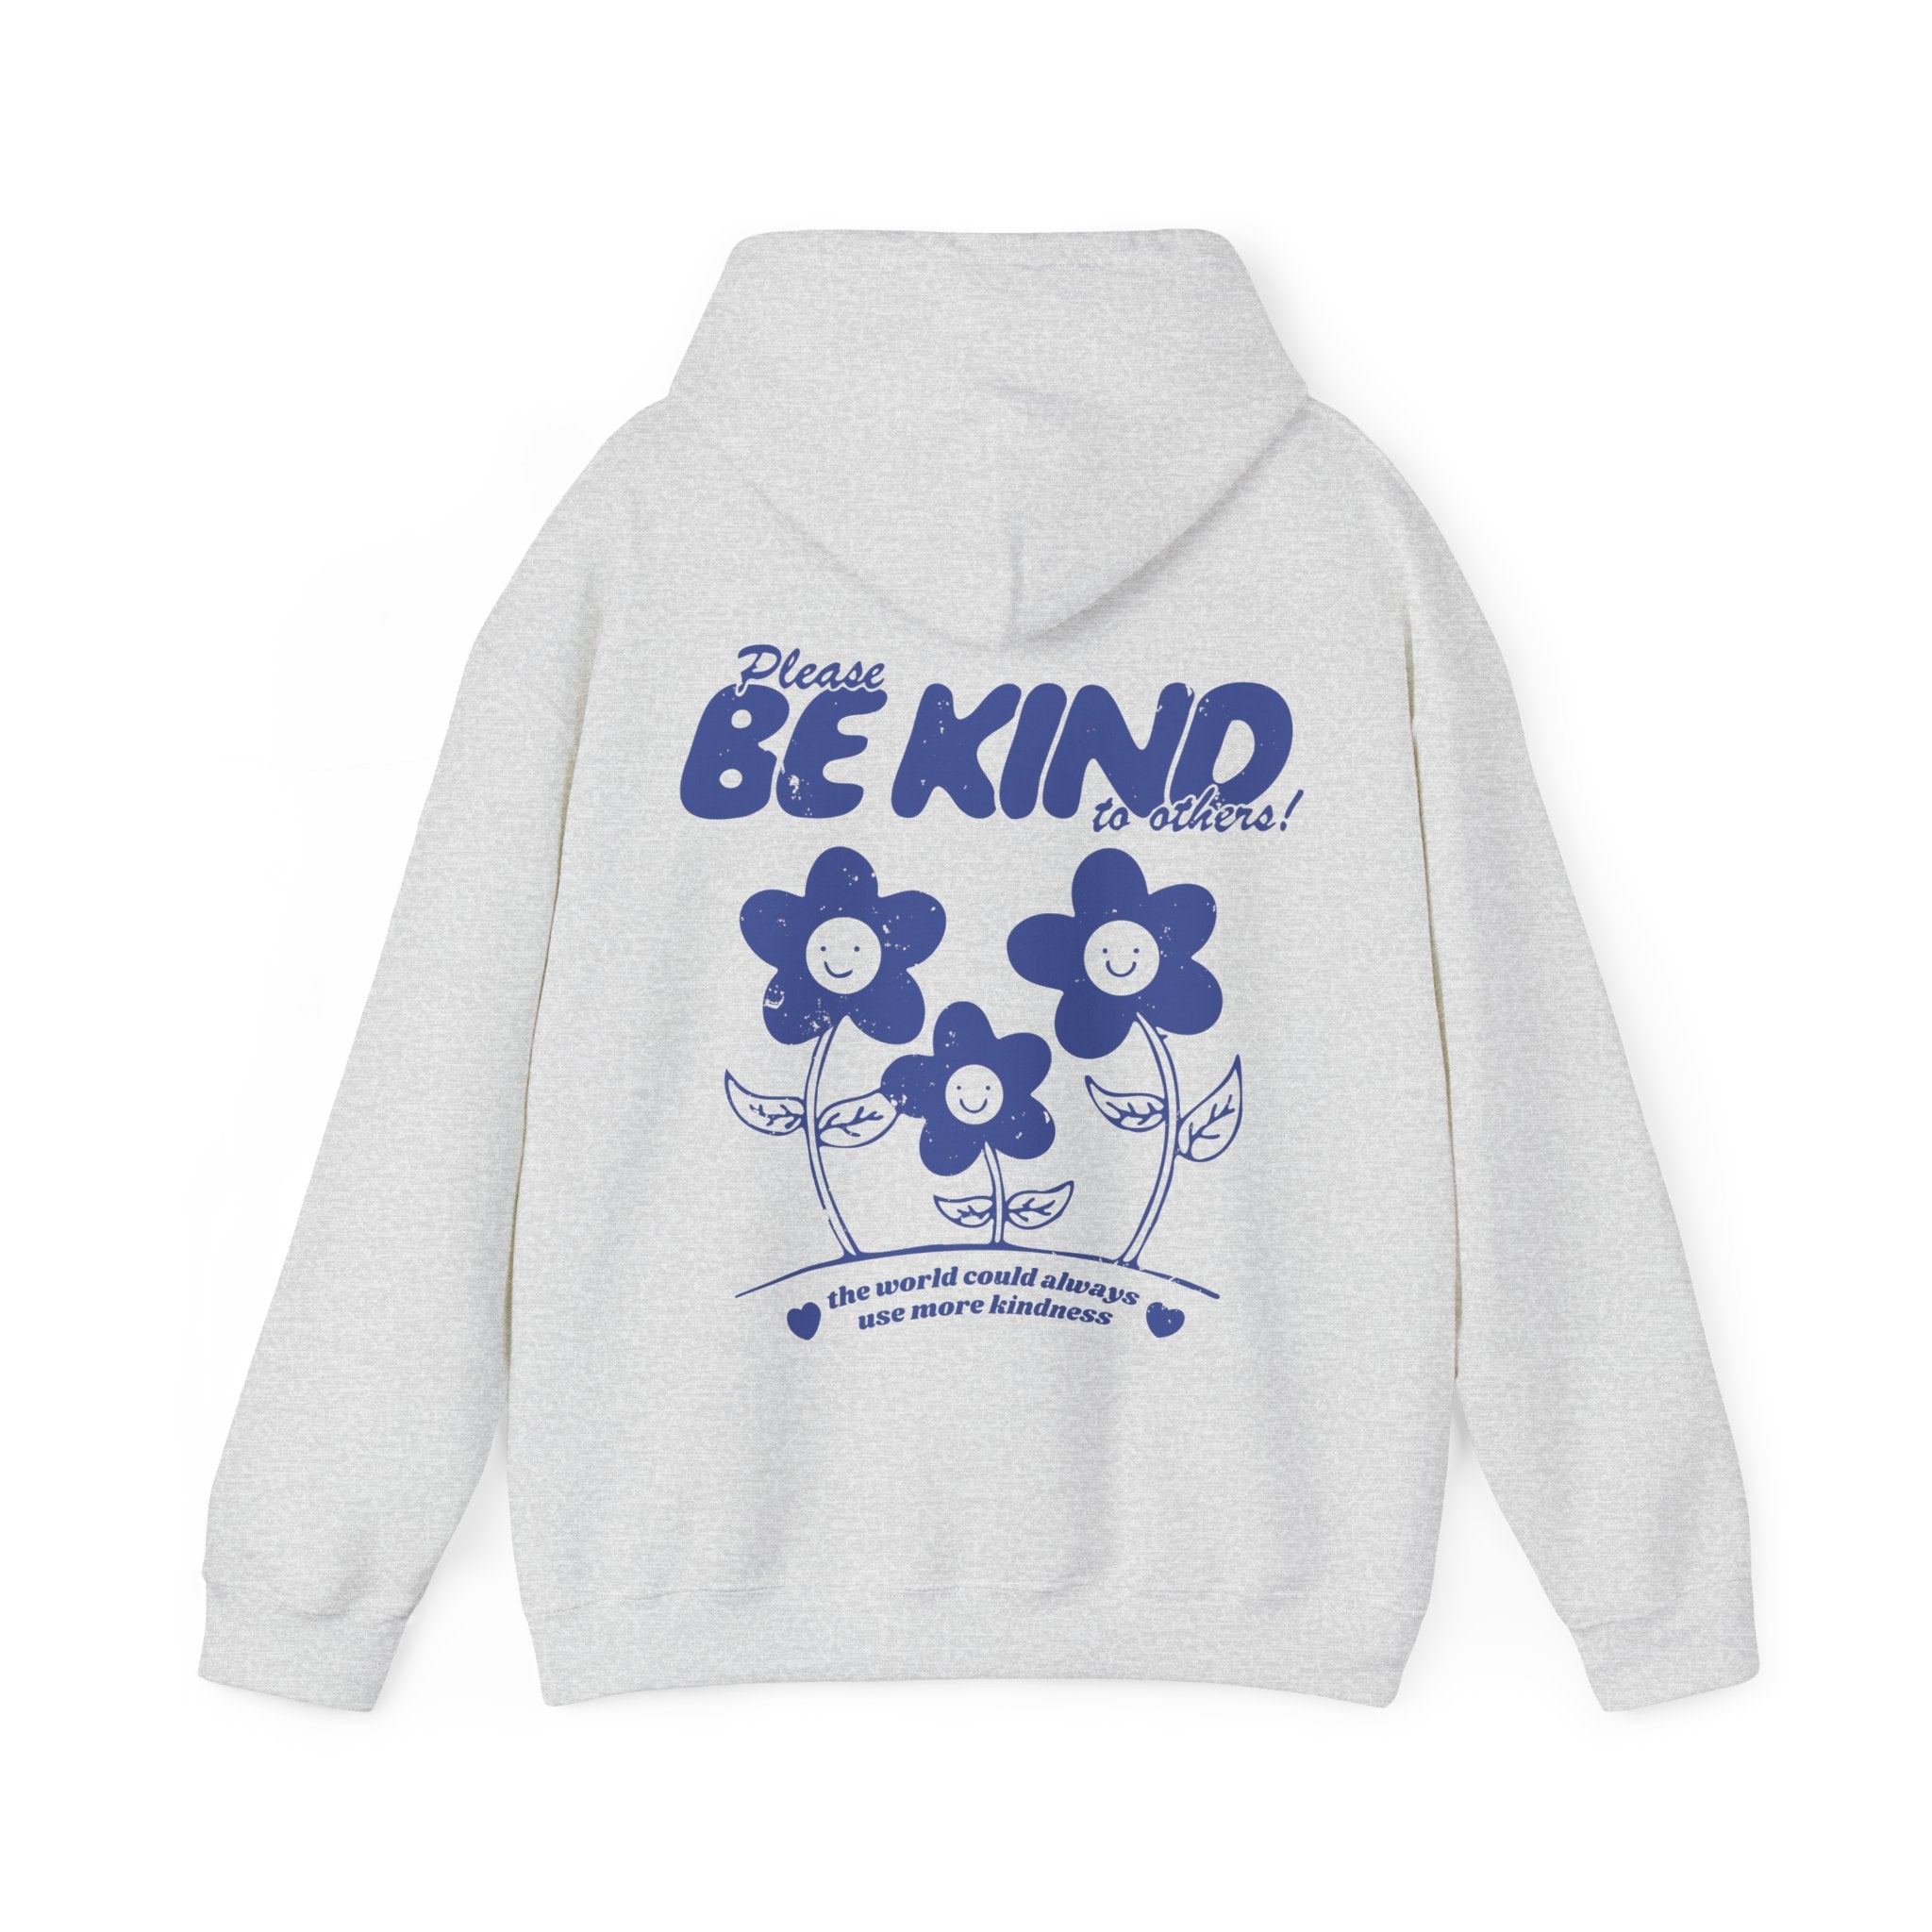 Be kind hoodie - CheeryVibes